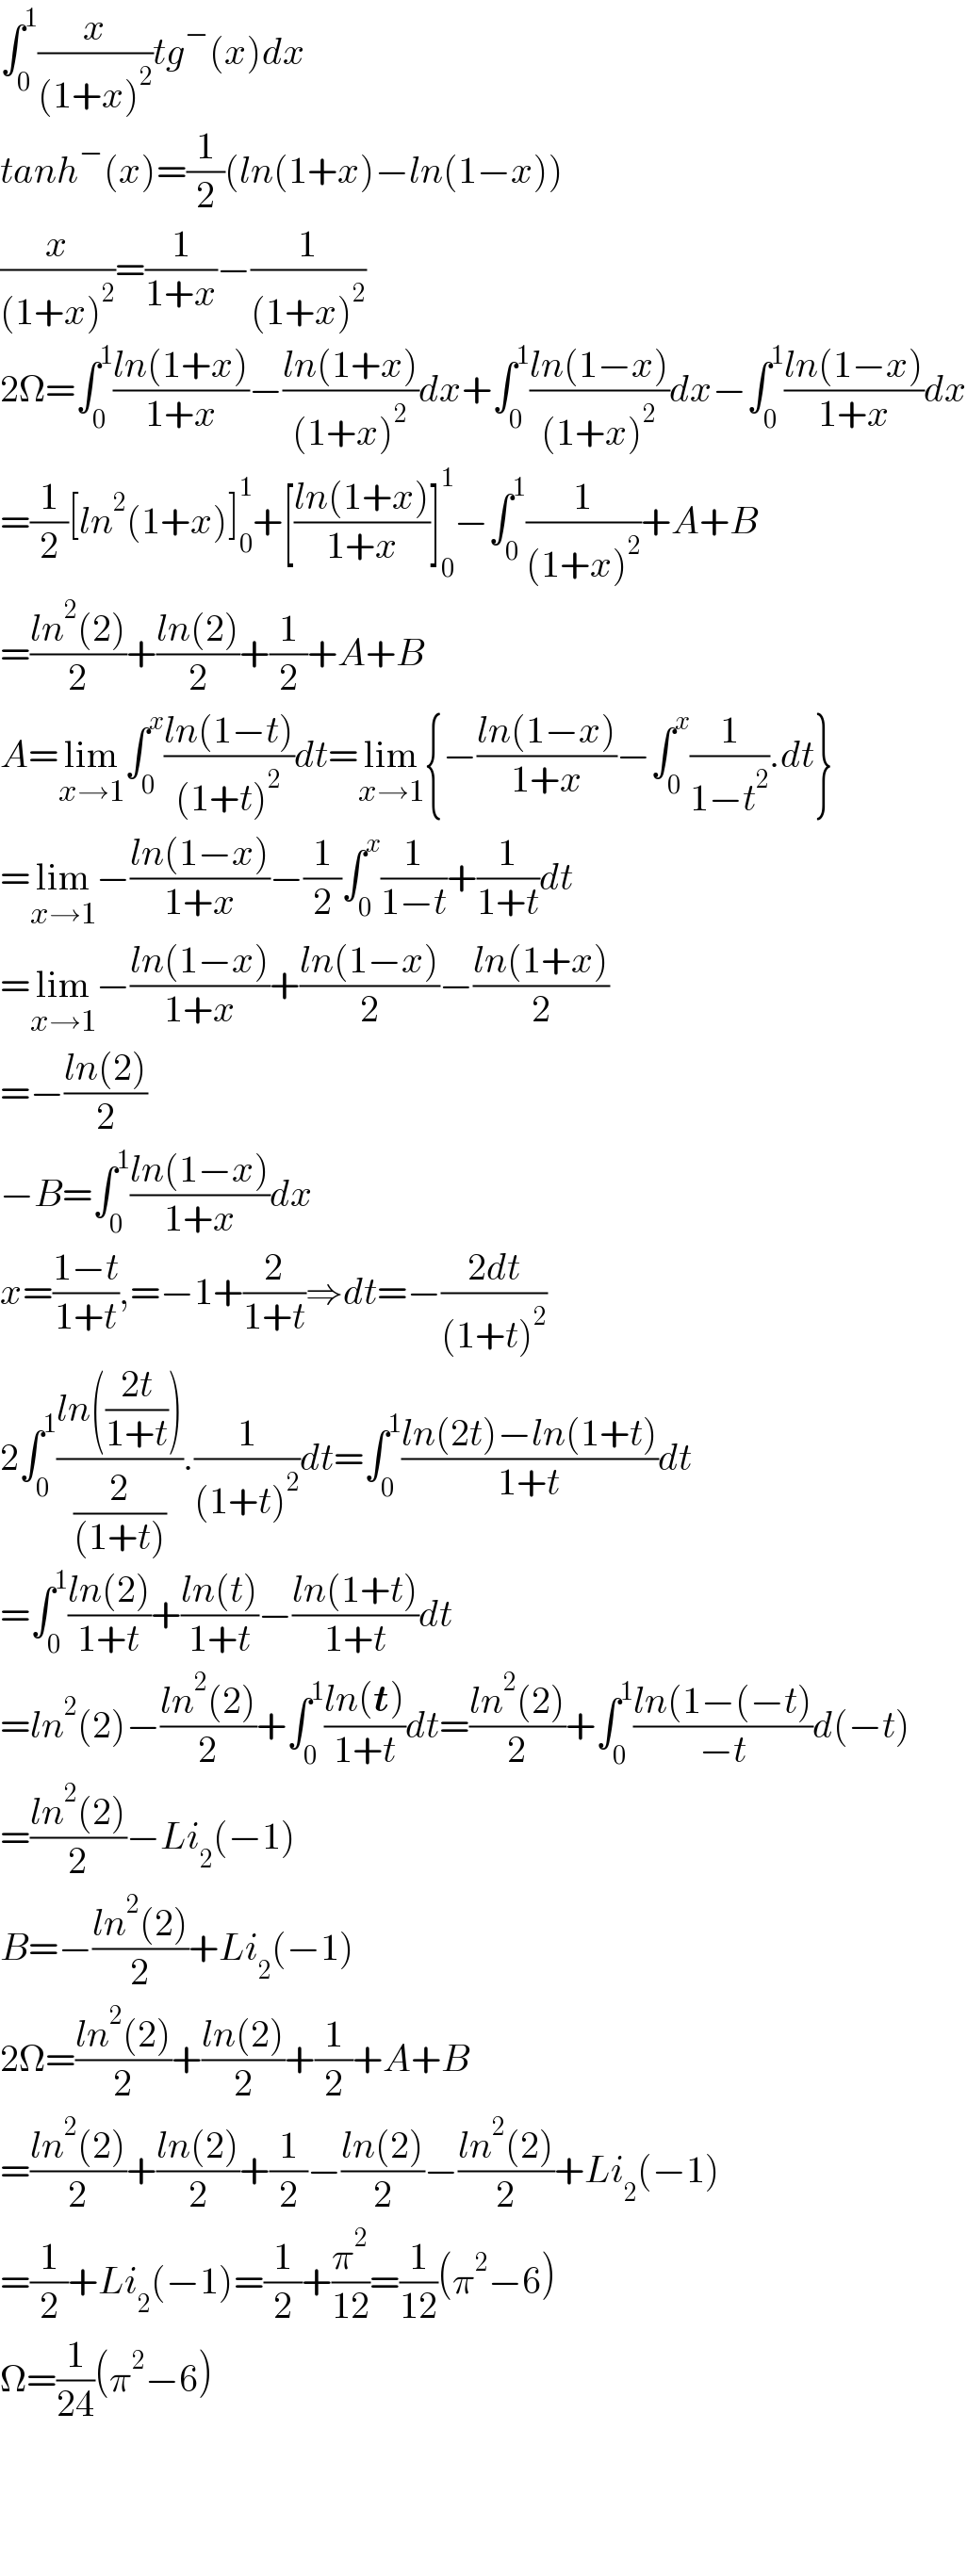 ∫_0 ^1 (x/((1+x)^2 ))tg^− (x)dx  tanh^− (x)=(1/2)(ln(1+x)−ln(1−x))  (x/((1+x)^2 ))=(1/(1+x))−(1/((1+x)^2 ))  2Ω=∫_0 ^1 ((ln(1+x))/(1+x))−((ln(1+x))/((1+x)^2 ))dx+∫_0 ^1 ((ln(1−x))/((1+x)^2 ))dx−∫_0 ^1 ((ln(1−x))/(1+x))dx  =(1/2)[ln^2 (1+x)]_0 ^1 +[((ln(1+x))/(1+x))]_0 ^1 −∫_0 ^1 (1/((1+x)^2 ))+A+B  =((ln^2 (2))/2)+((ln(2))/2)+(1/2)+A+B  A=lim_(x→1) ∫_0 ^x ((ln(1−t))/((1+t)^2 ))dt=lim_(x→1) {−((ln(1−x))/(1+x))−∫_0 ^x (1/(1−t^2 )).dt}  =lim_(x→1) −((ln(1−x))/(1+x))−(1/2)∫_0 ^x (1/(1−t))+(1/(1+t))dt  =lim_(x→1) −((ln(1−x))/(1+x))+((ln(1−x))/2)−((ln(1+x))/2)  =−((ln(2))/2)  −B=∫_0 ^1 ((ln(1−x))/(1+x))dx  x=((1−t)/(1+t)),=−1+(2/(1+t))⇒dt=−((2dt)/((1+t)^2 ))  2∫_0 ^1 ((ln(((2t)/(1+t))))/(2/((1+t)))).(1/((1+t)^2 ))dt=∫_0 ^1 ((ln(2t)−ln(1+t))/(1+t))dt  =∫_0 ^1 ((ln(2))/(1+t))+((ln(t))/(1+t))−((ln(1+t))/(1+t))dt  =ln^2 (2)−((ln^2 (2))/2)+∫_0 ^1 ((ln(t))/(1+t))dt=((ln^2 (2))/2)+∫_0 ^1 ((ln(1−(−t))/(−t))d(−t)  =((ln^2 (2))/2)−Li_2 (−1)  B=−((ln^2 (2))/2)+Li_2 (−1)  2Ω=((ln^2 (2))/2)+((ln(2))/2)+(1/2)+A+B  =((ln^2 (2))/2)+((ln(2))/2)+(1/2)−((ln(2))/2)−((ln^2 (2))/2)+Li_2 (−1)  =(1/2)+Li_2 (−1)=(1/2)+(π^2 /(12))=(1/(12))(π^2 −6)  Ω=(1/(24))(π^2 −6)        